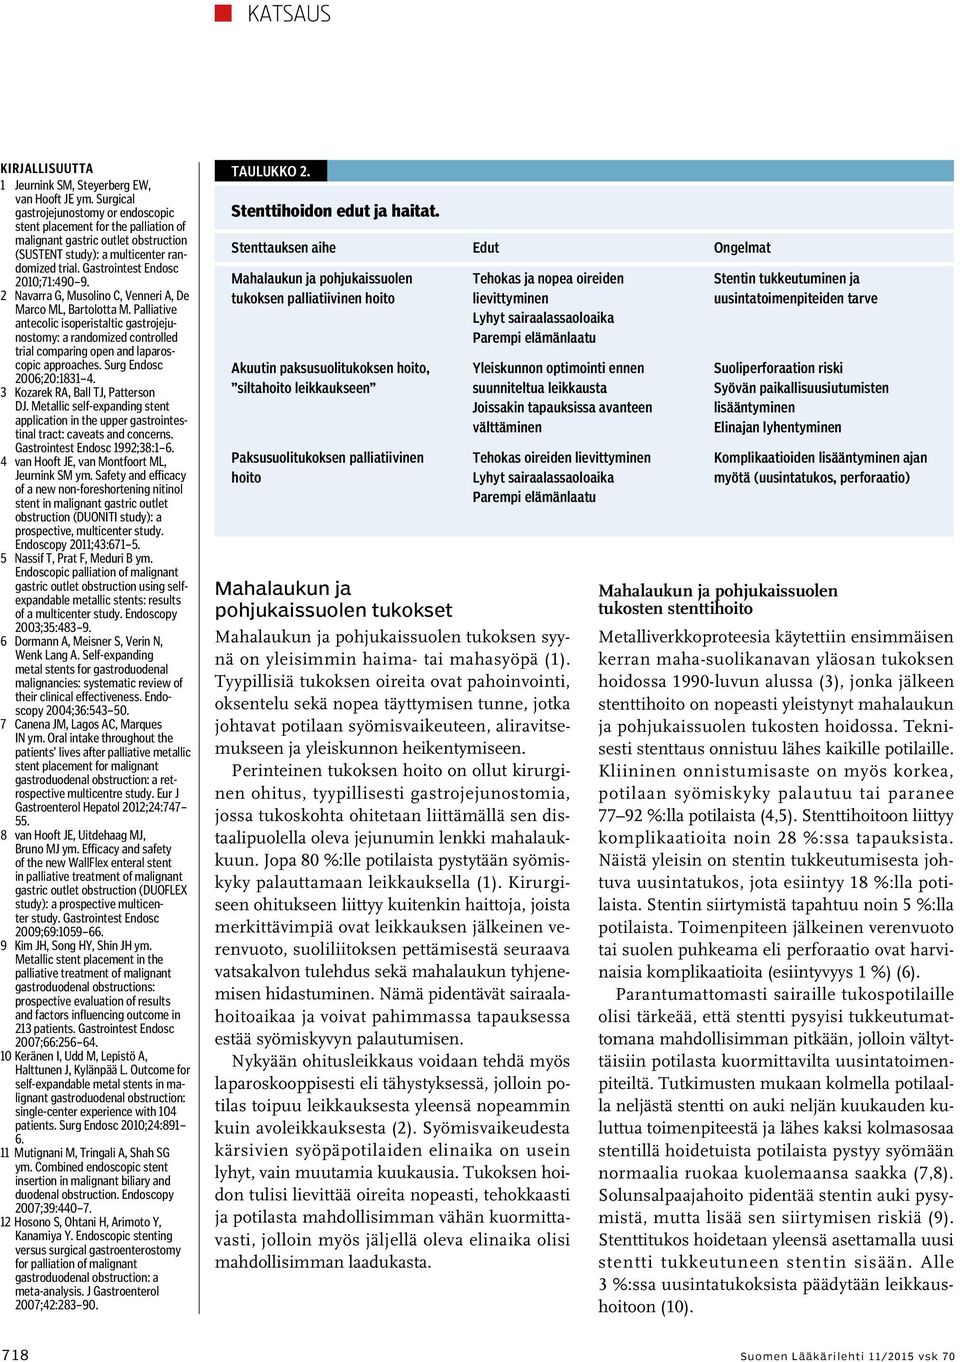 2 Navarra G, Musolino C, Venneri A, De Marco ML, Bartolotta M. Palliative antecolic isoperistaltic gastrojejunostomy: a randomized controlled trial comparing open and laparoscopic approaches.